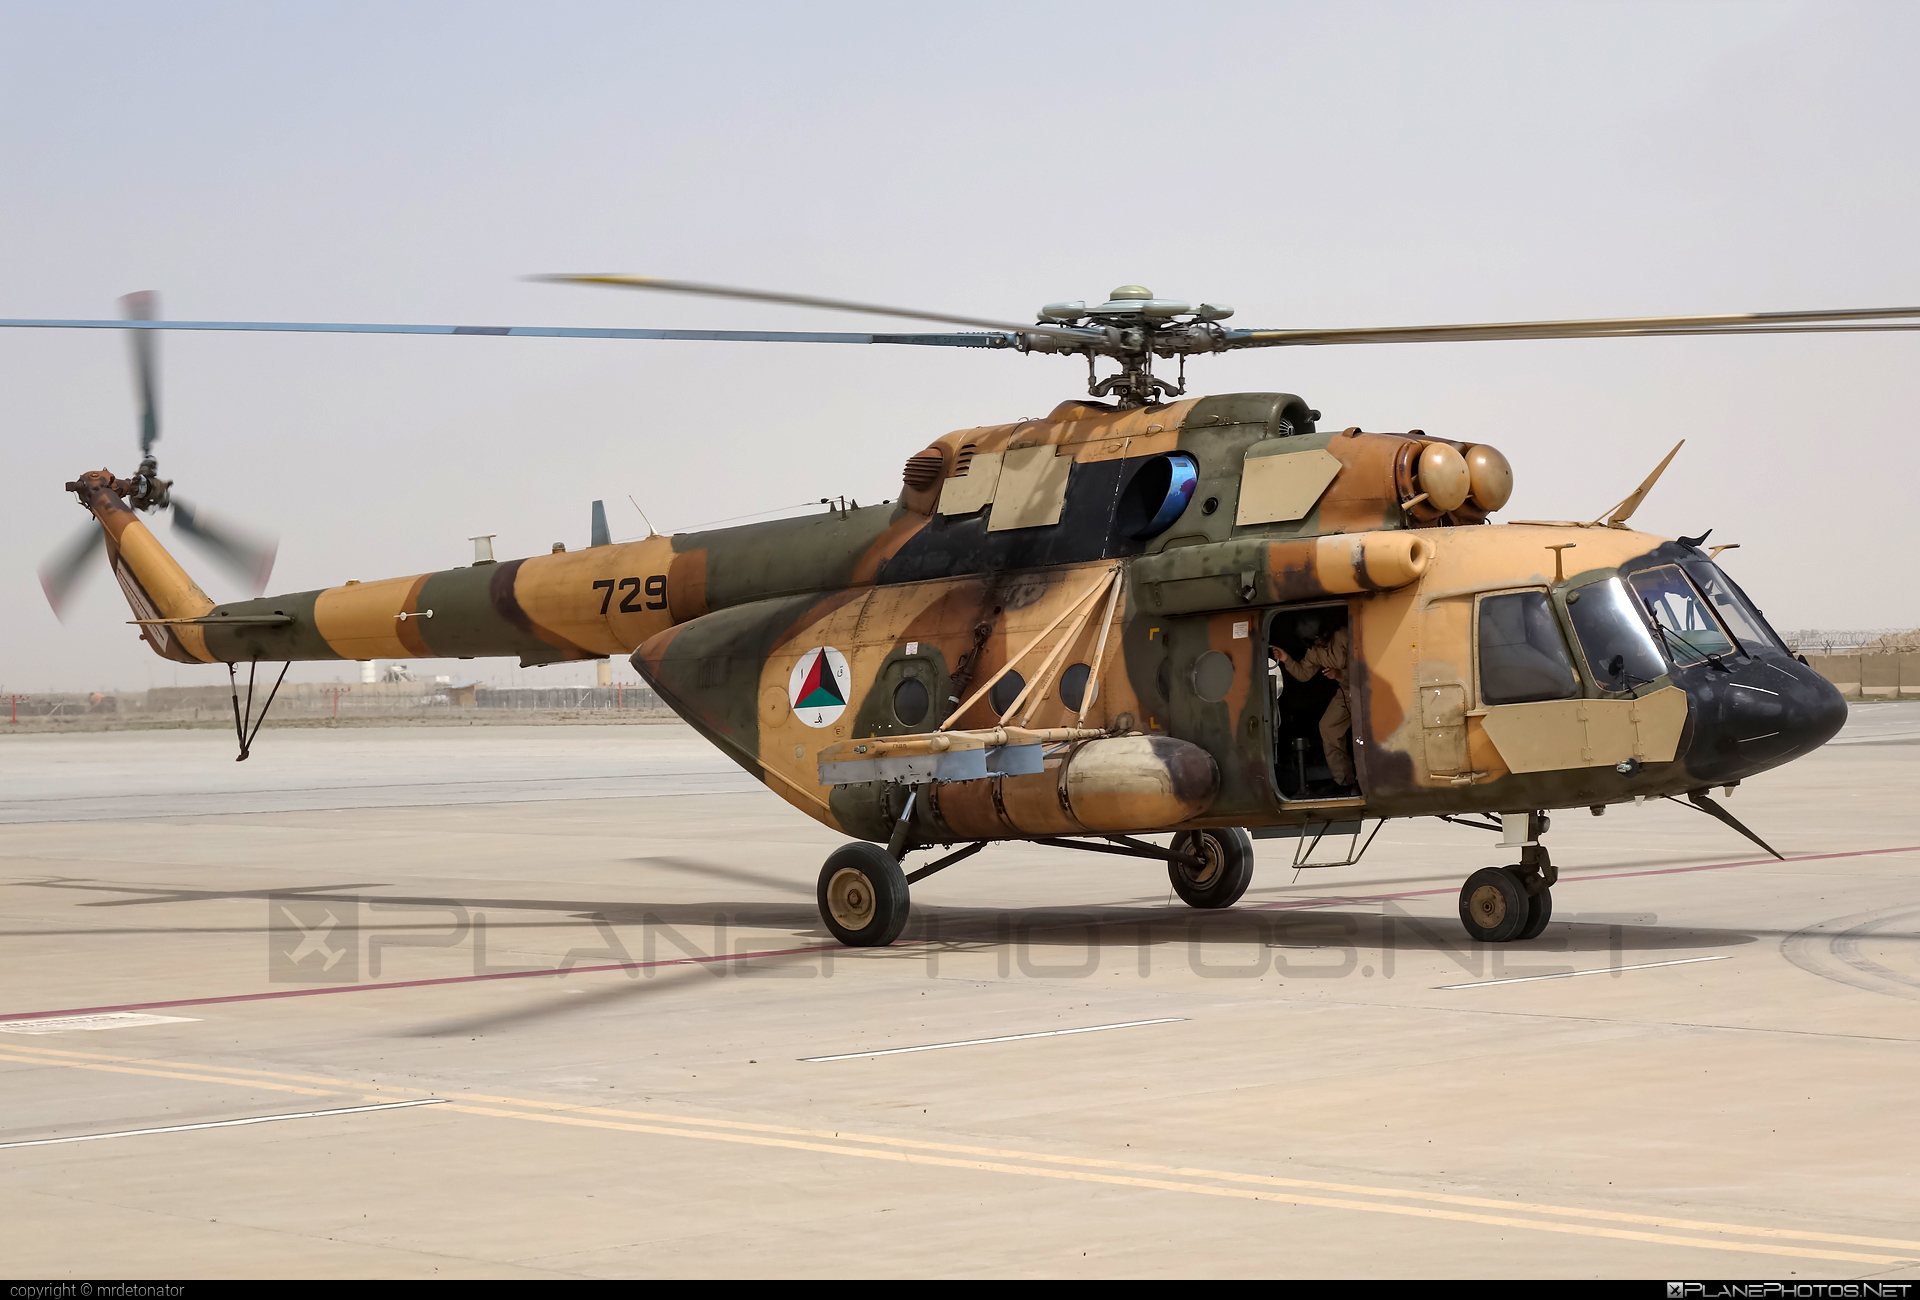 Mil Mi-17V-5 - 729 operated by Afghan Air Force #afghanairforce #mi17 #mi17v5 #mil #mil17 #milhelicopters